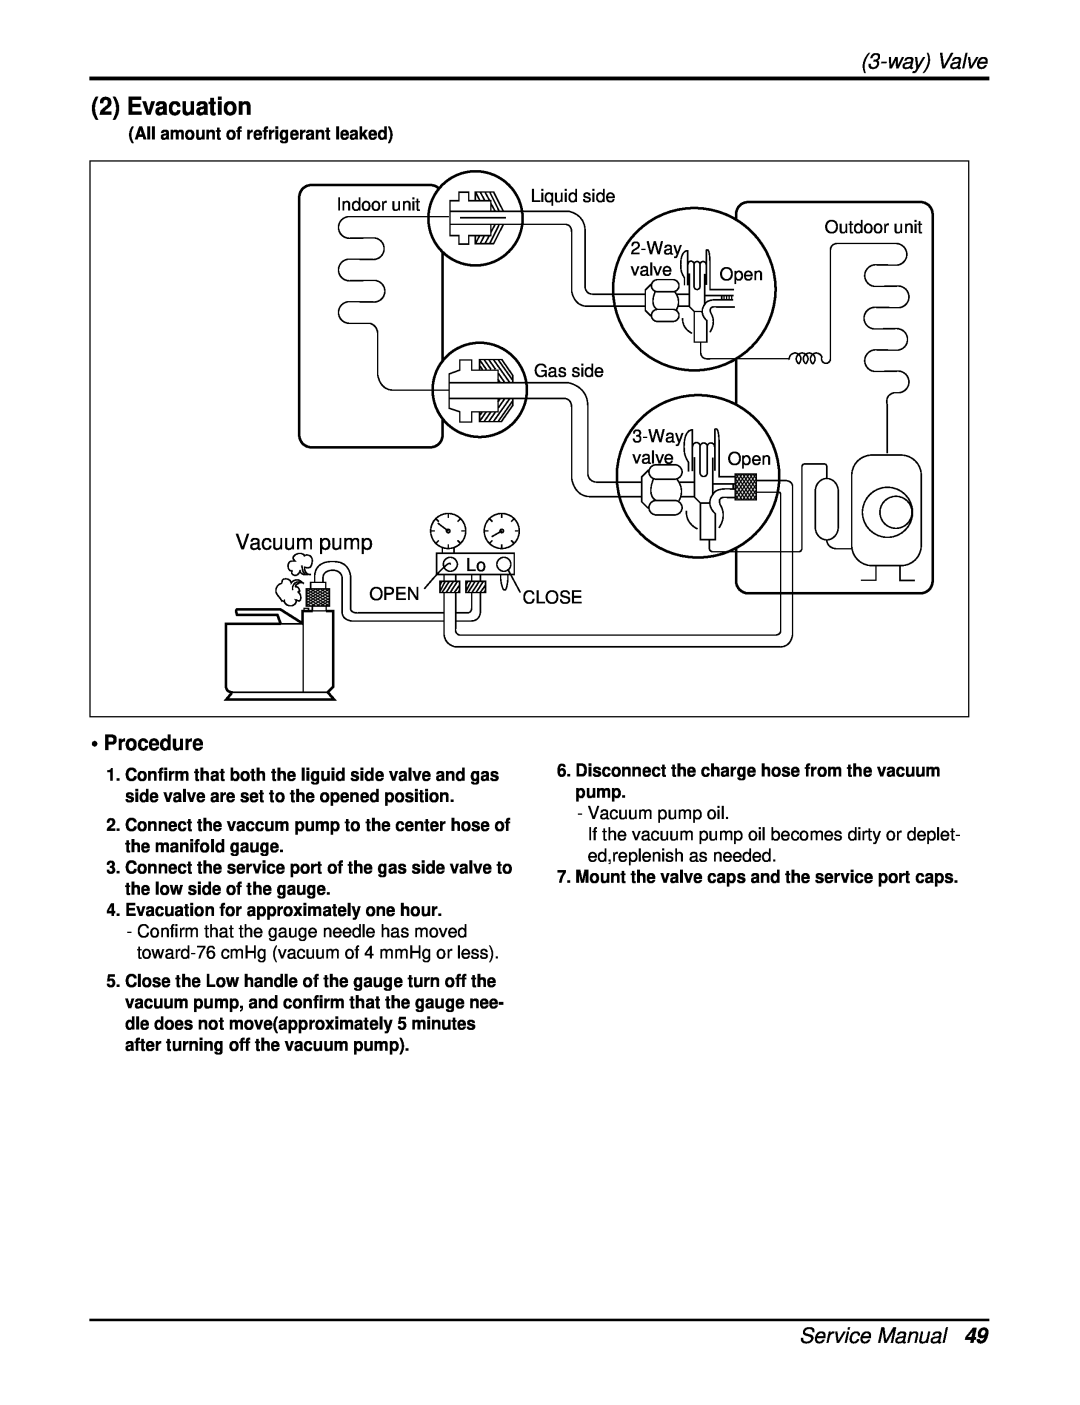 Heat Controller DMC36CA-1, DMC24CA-1 manual Evacuation, wayValve, Vacuum pump 